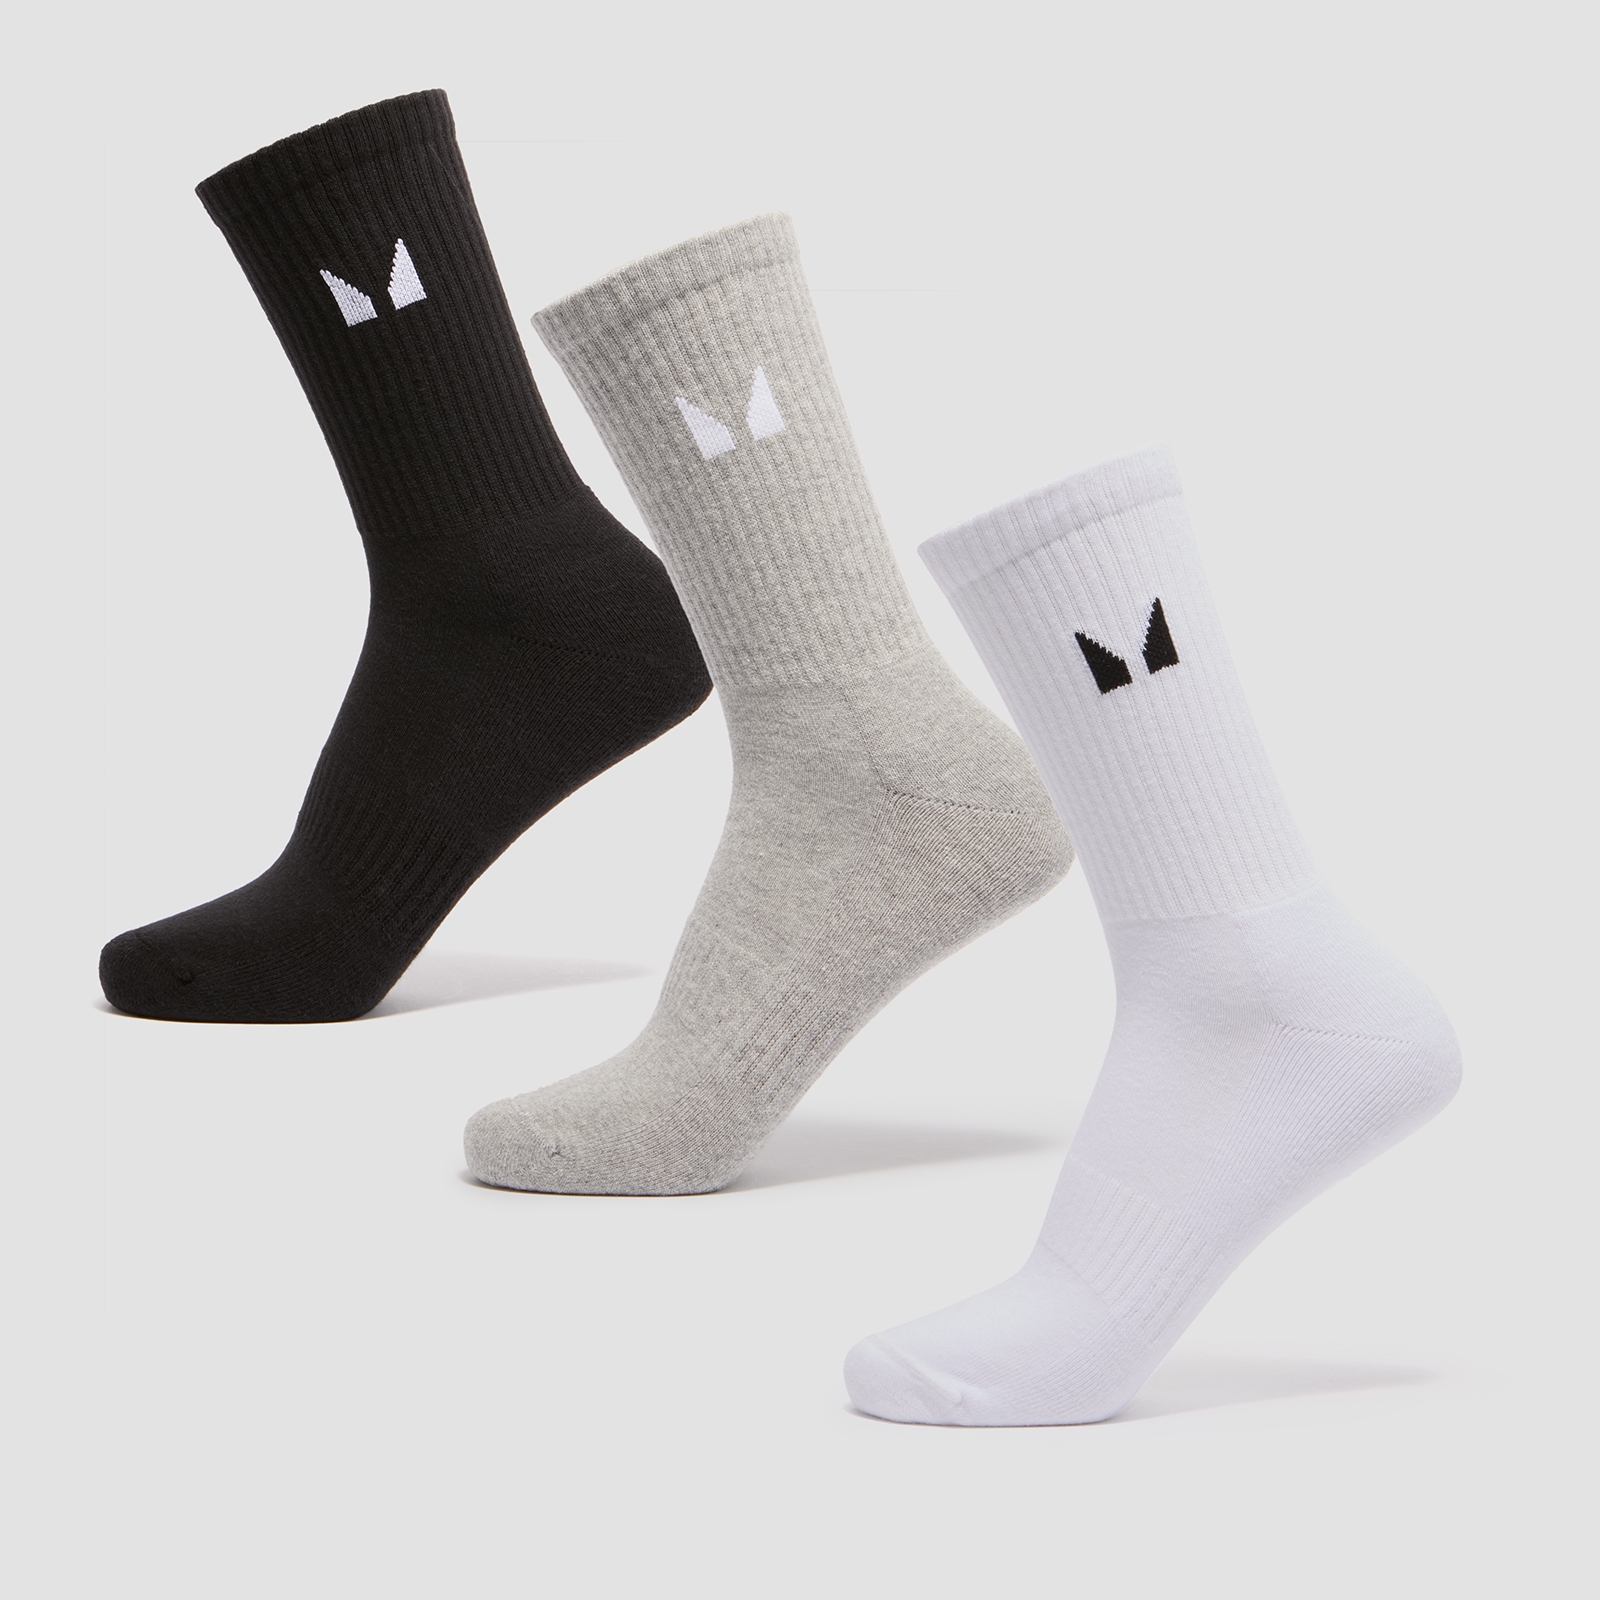 MP Uniseks sportske čarape (3 kom u pakiranju) – Bijele/Crne/Sivi lapor - UK 2-5